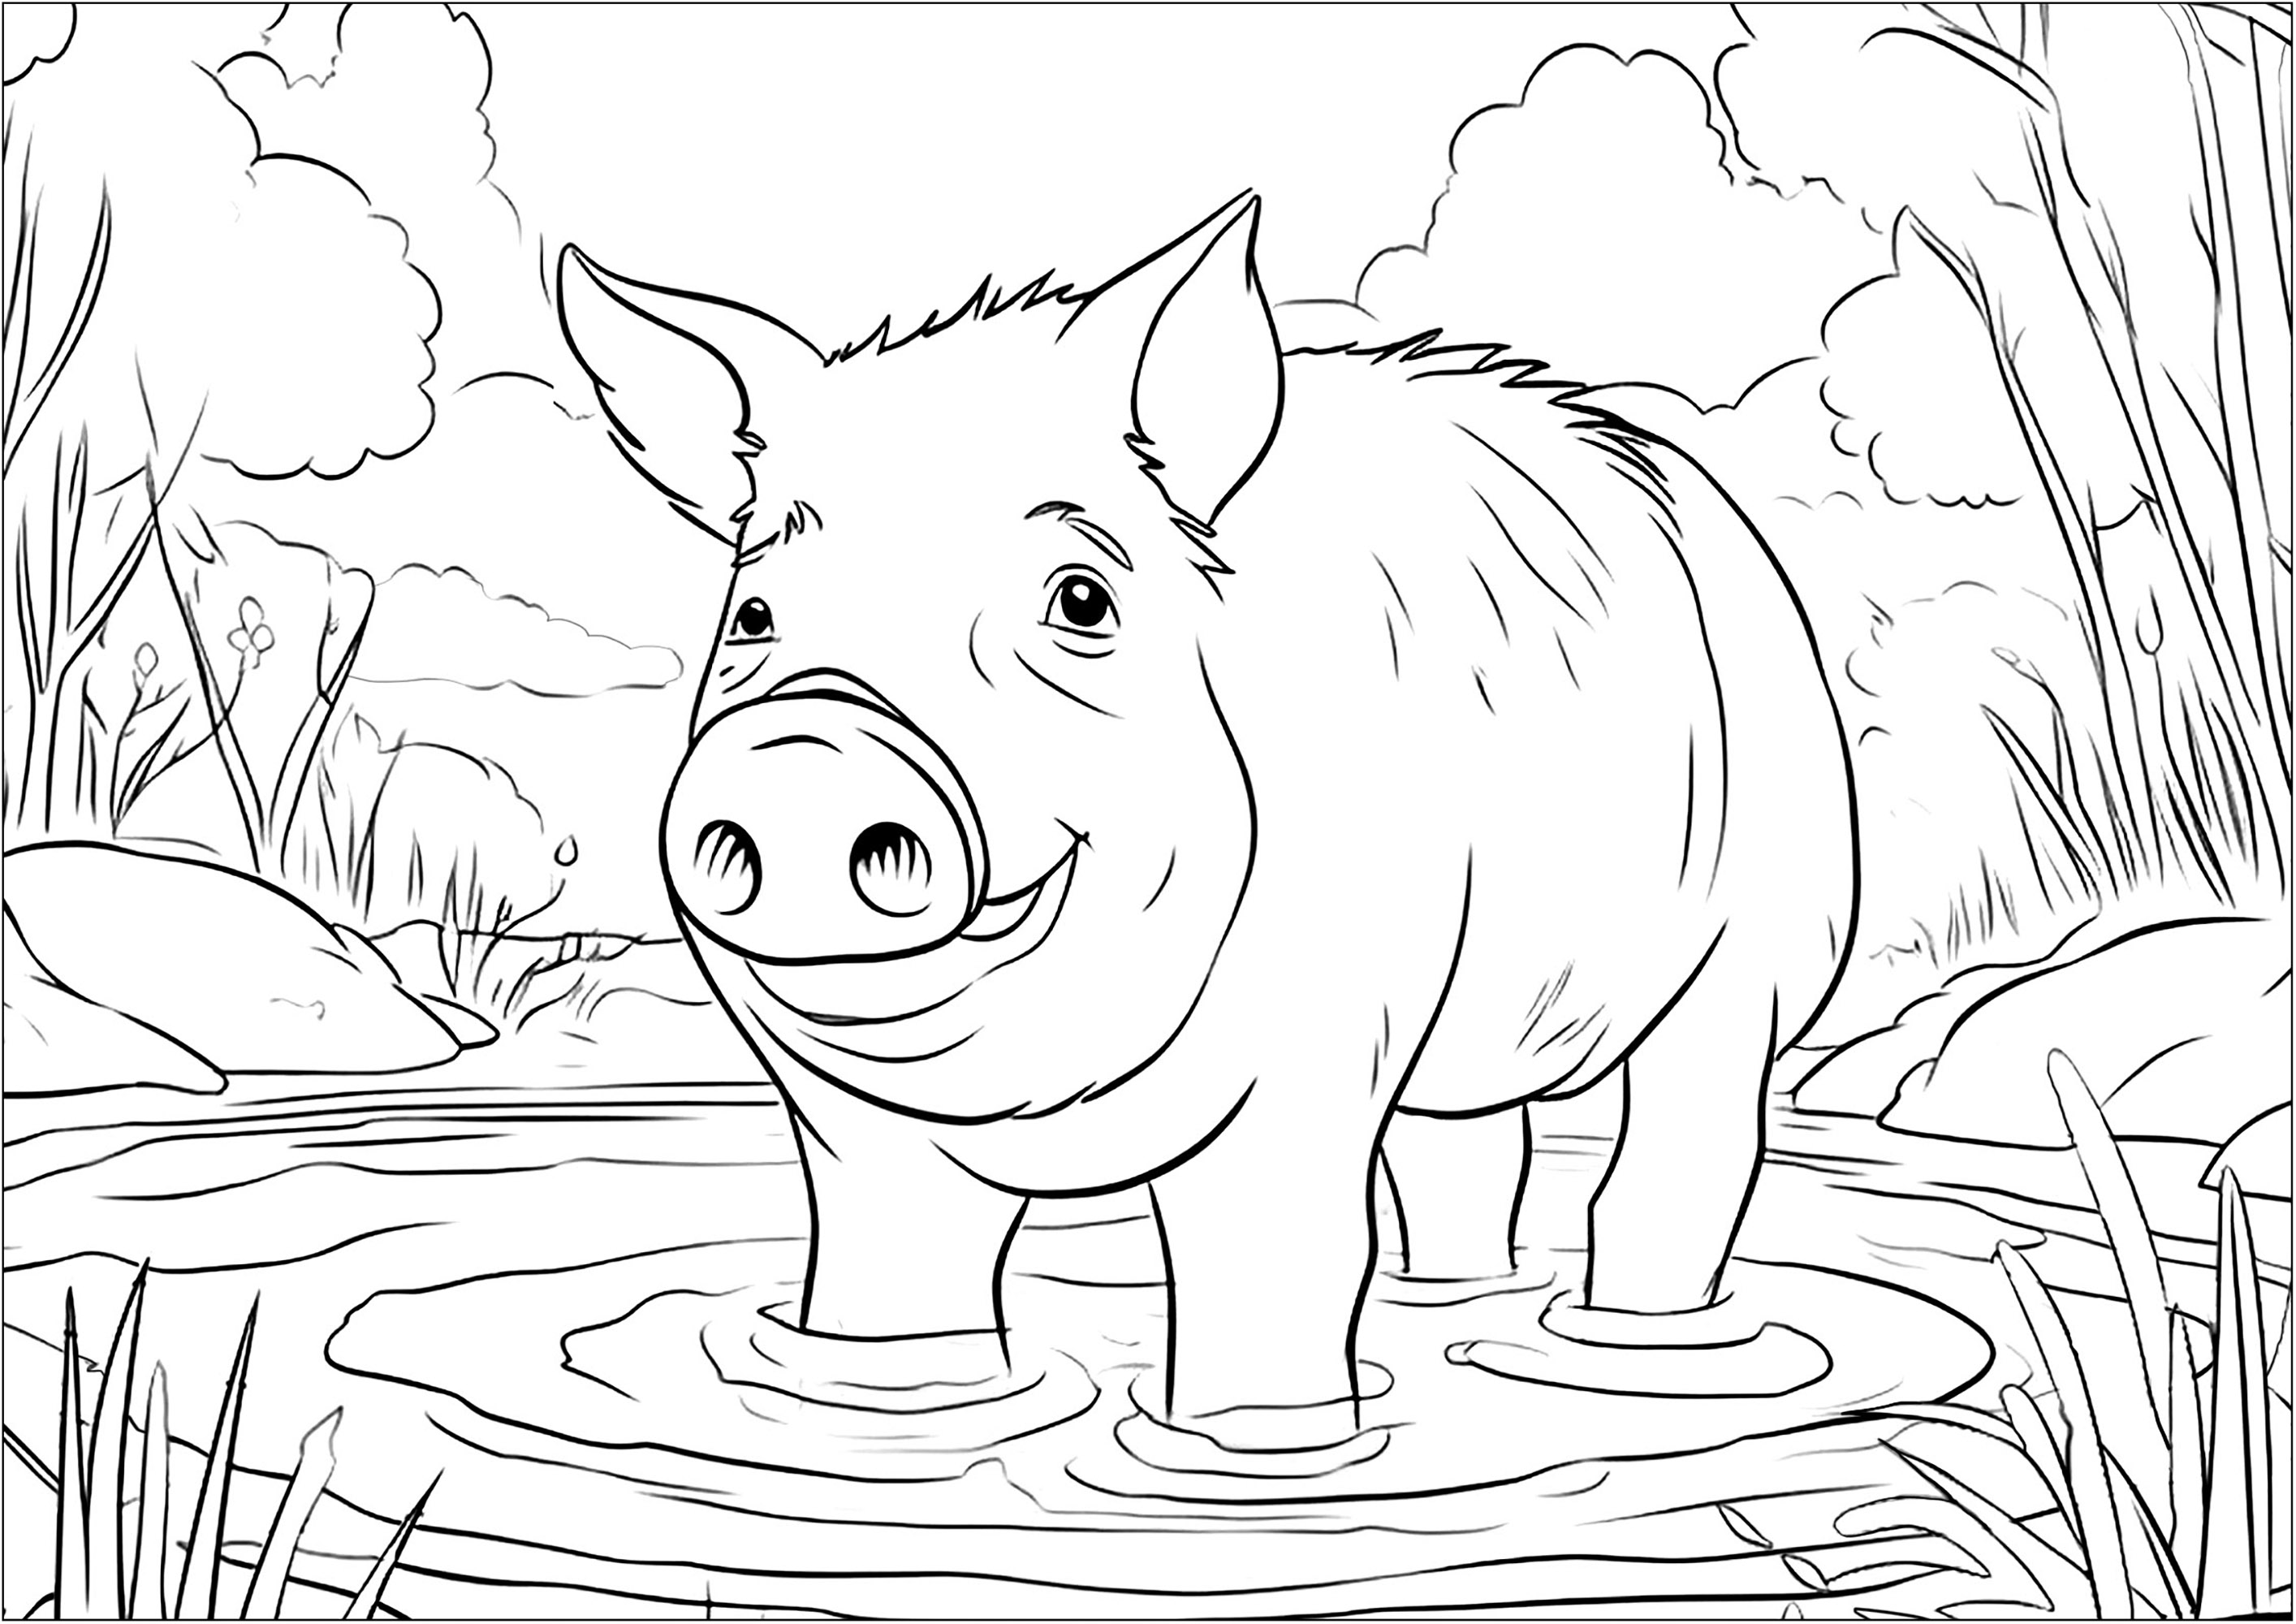 Pig bathing in a pool of mud